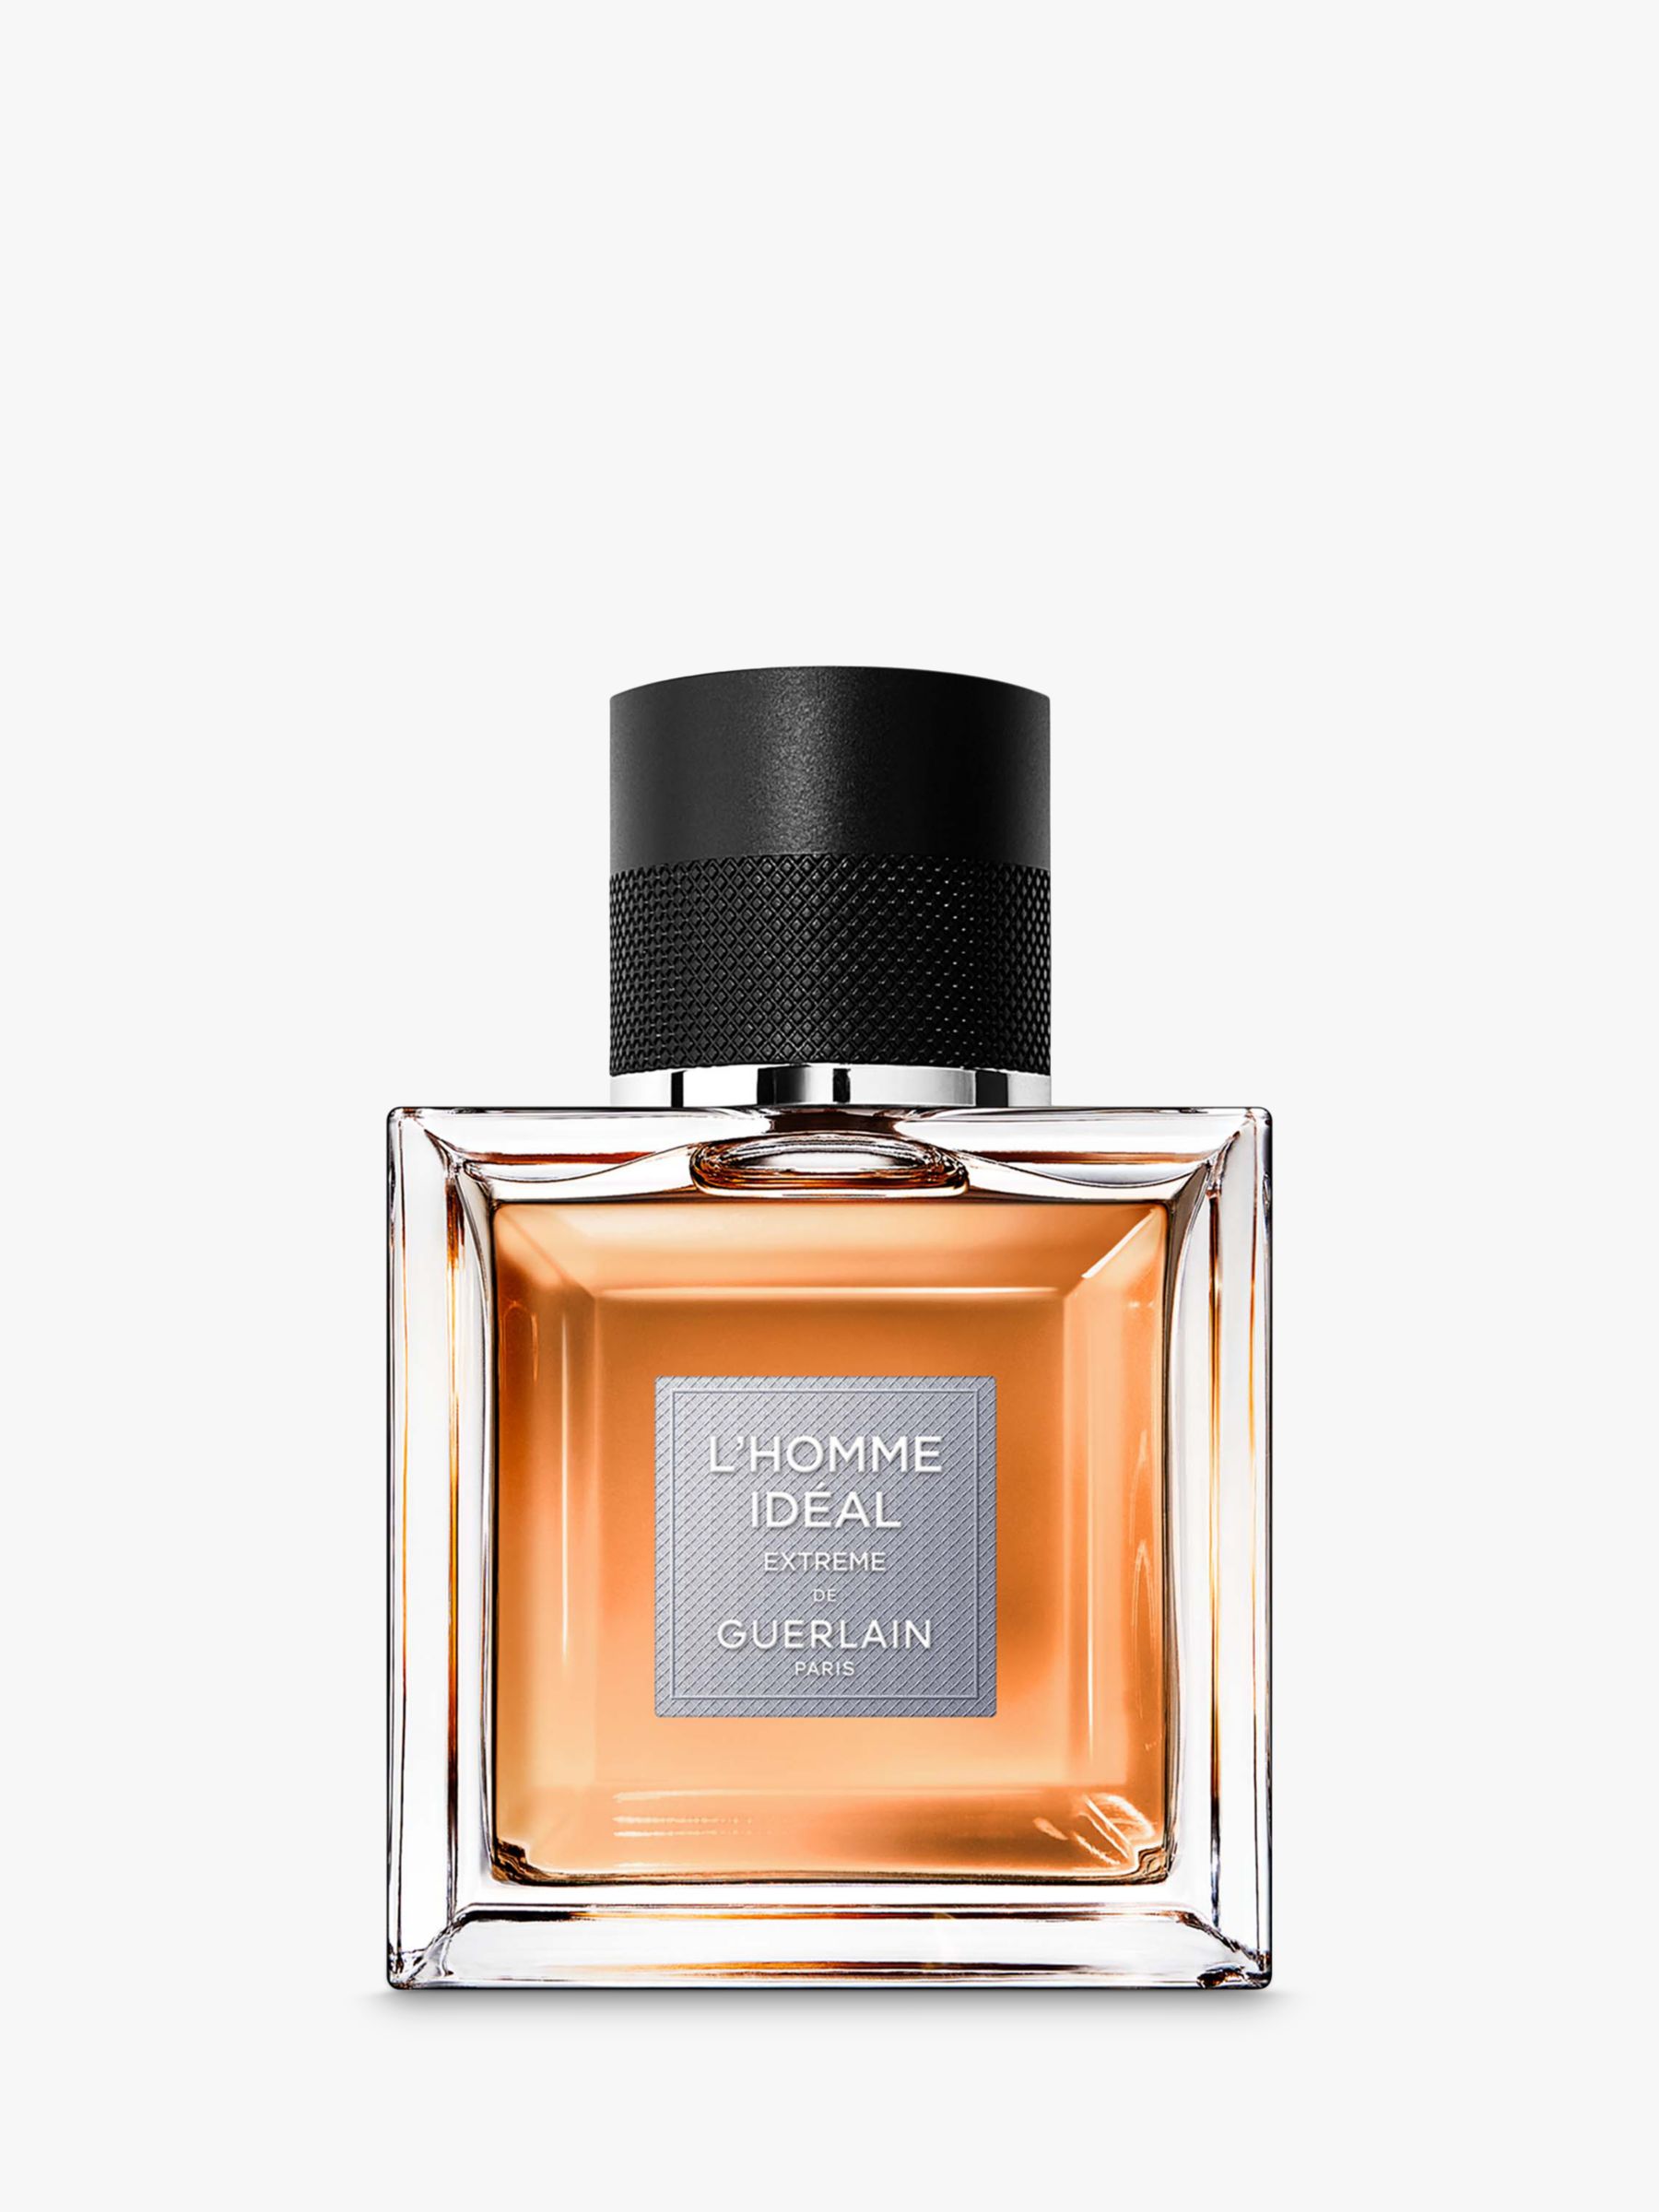 GUERLAIN L'Homme Ideal Extreme Eau de Parfum Spray 50ml/1.6oz